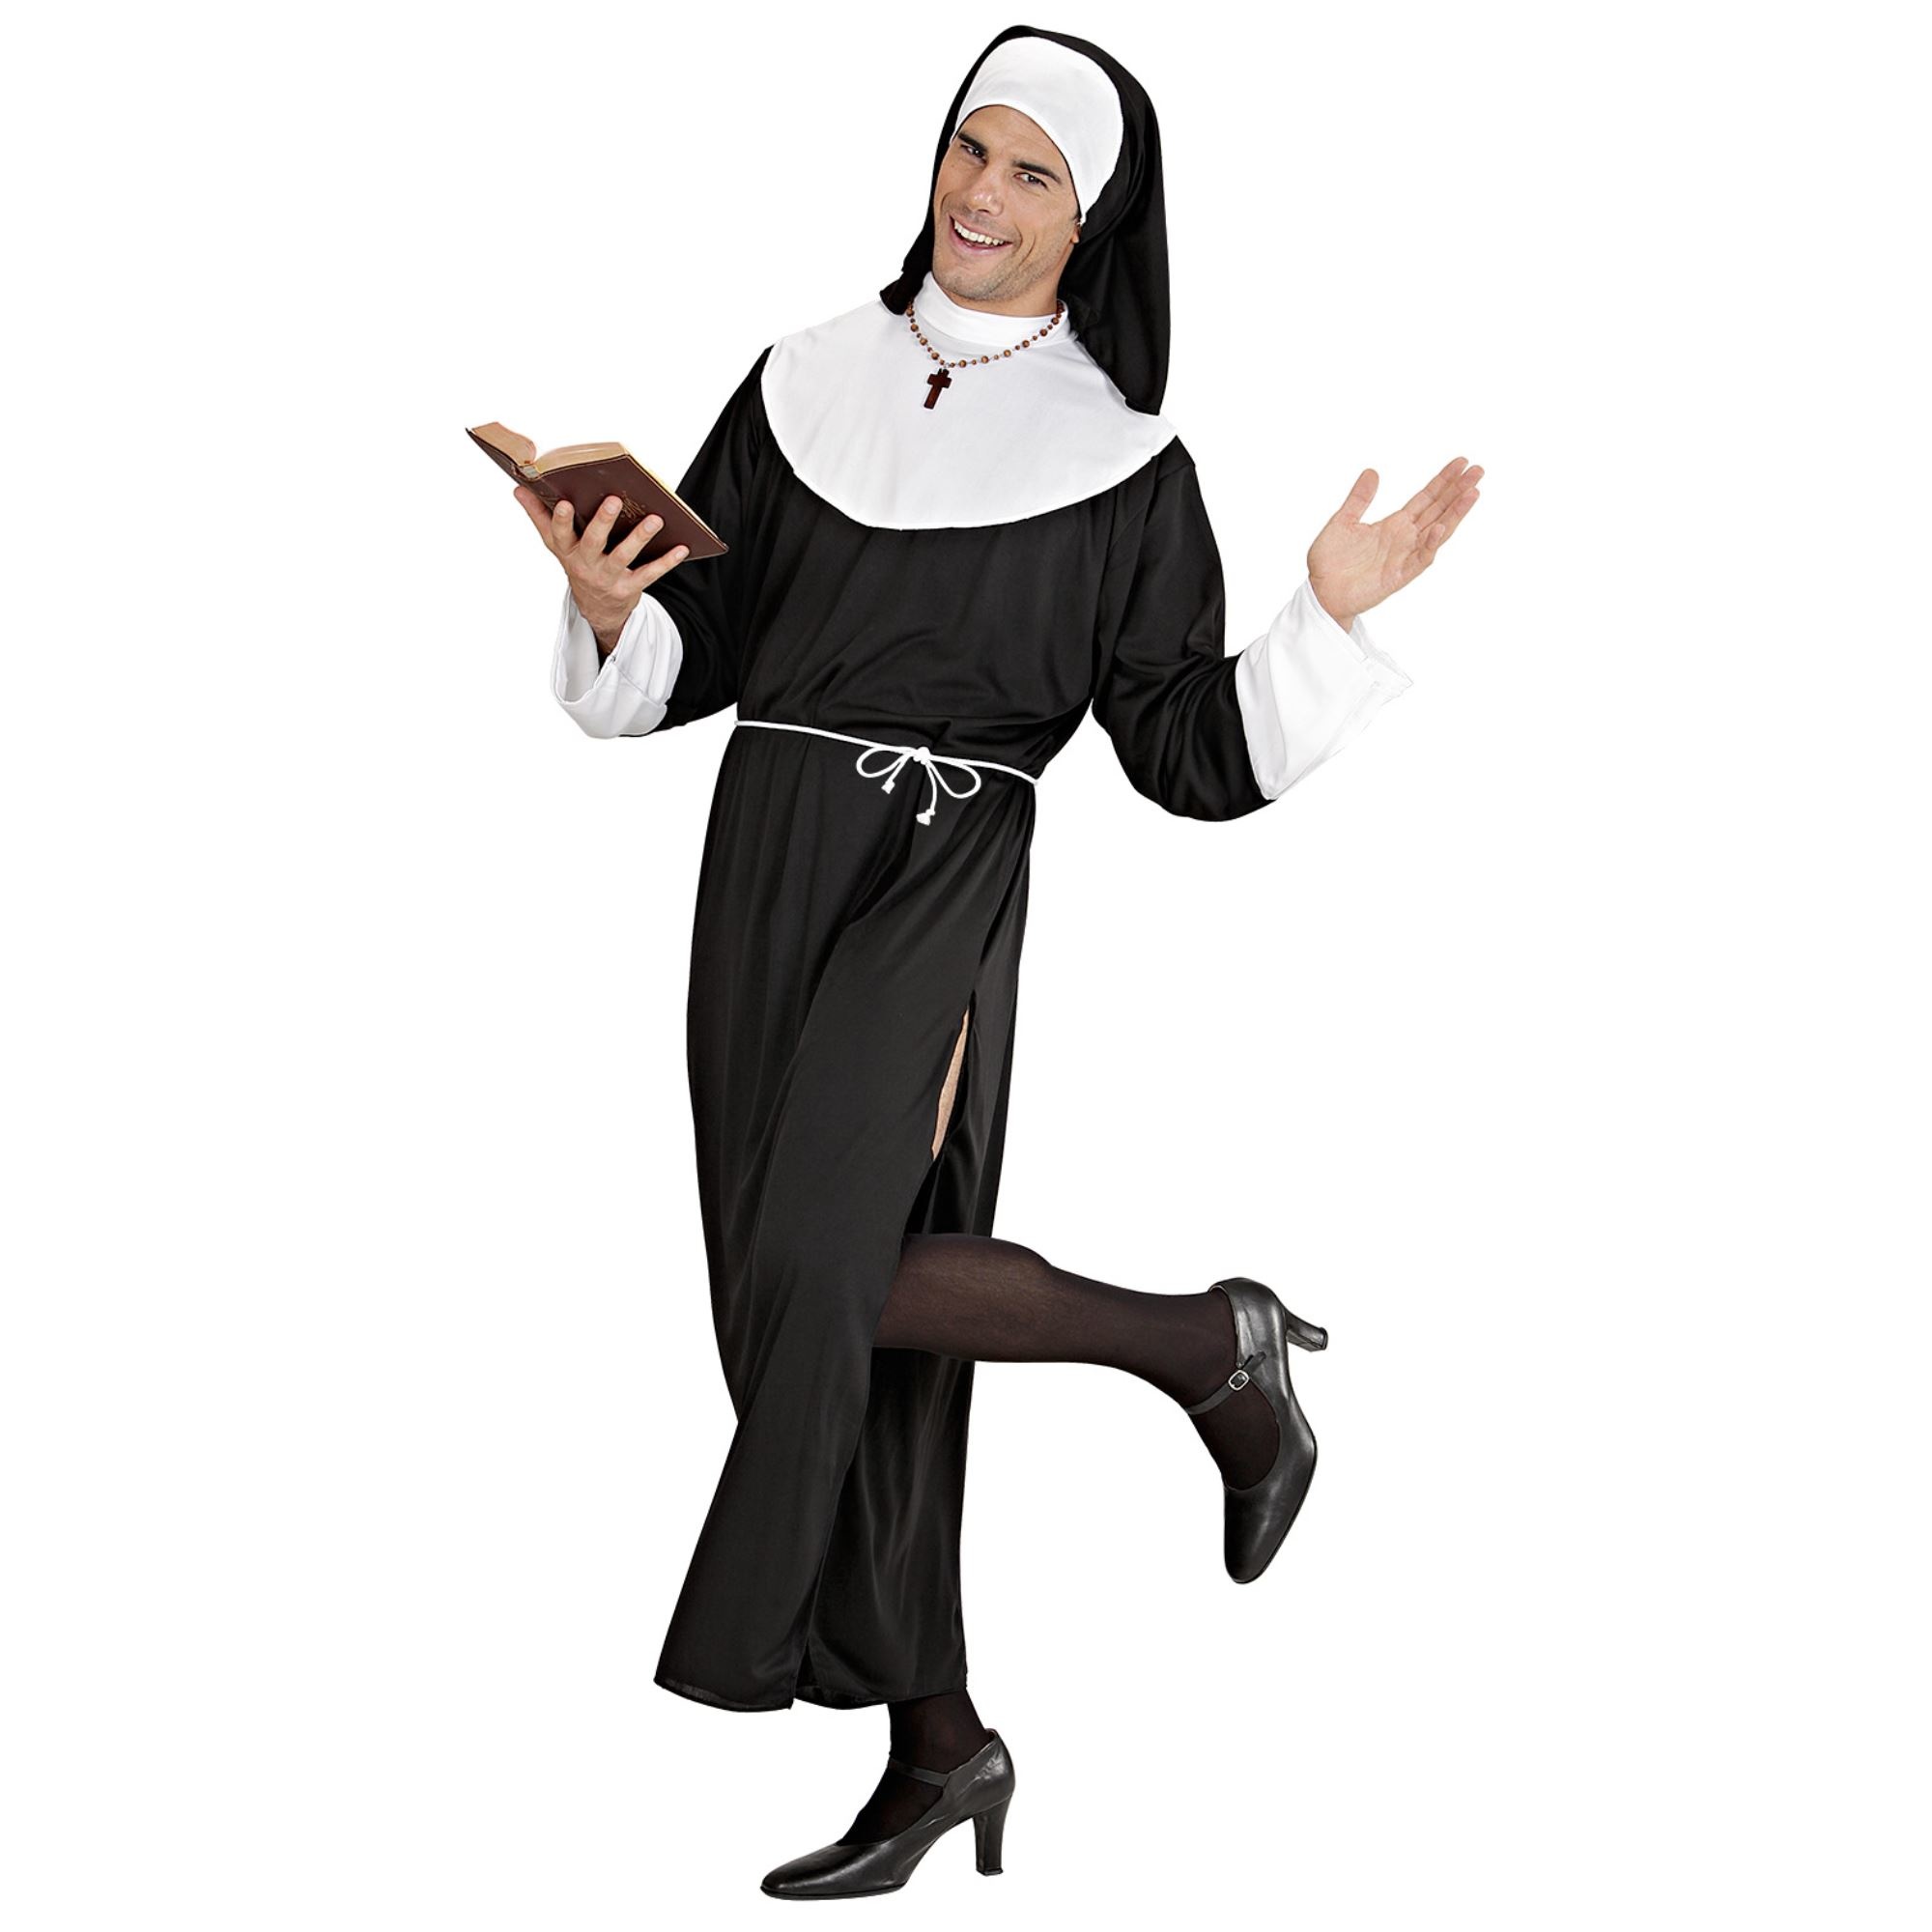 "Religieus kostuum voor mannen - Verkleedkleding - Small"